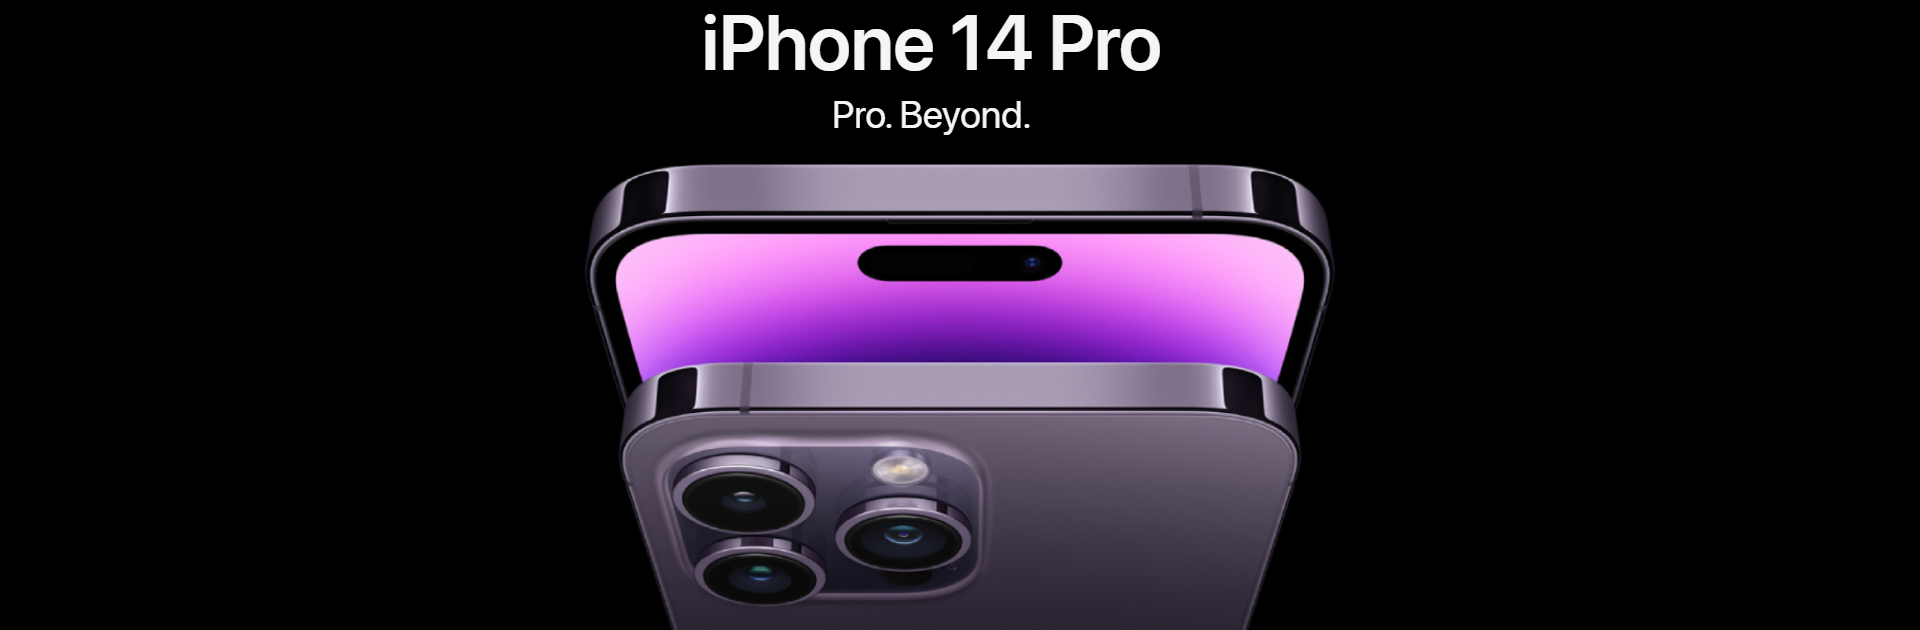 appl-iphone-14-pro